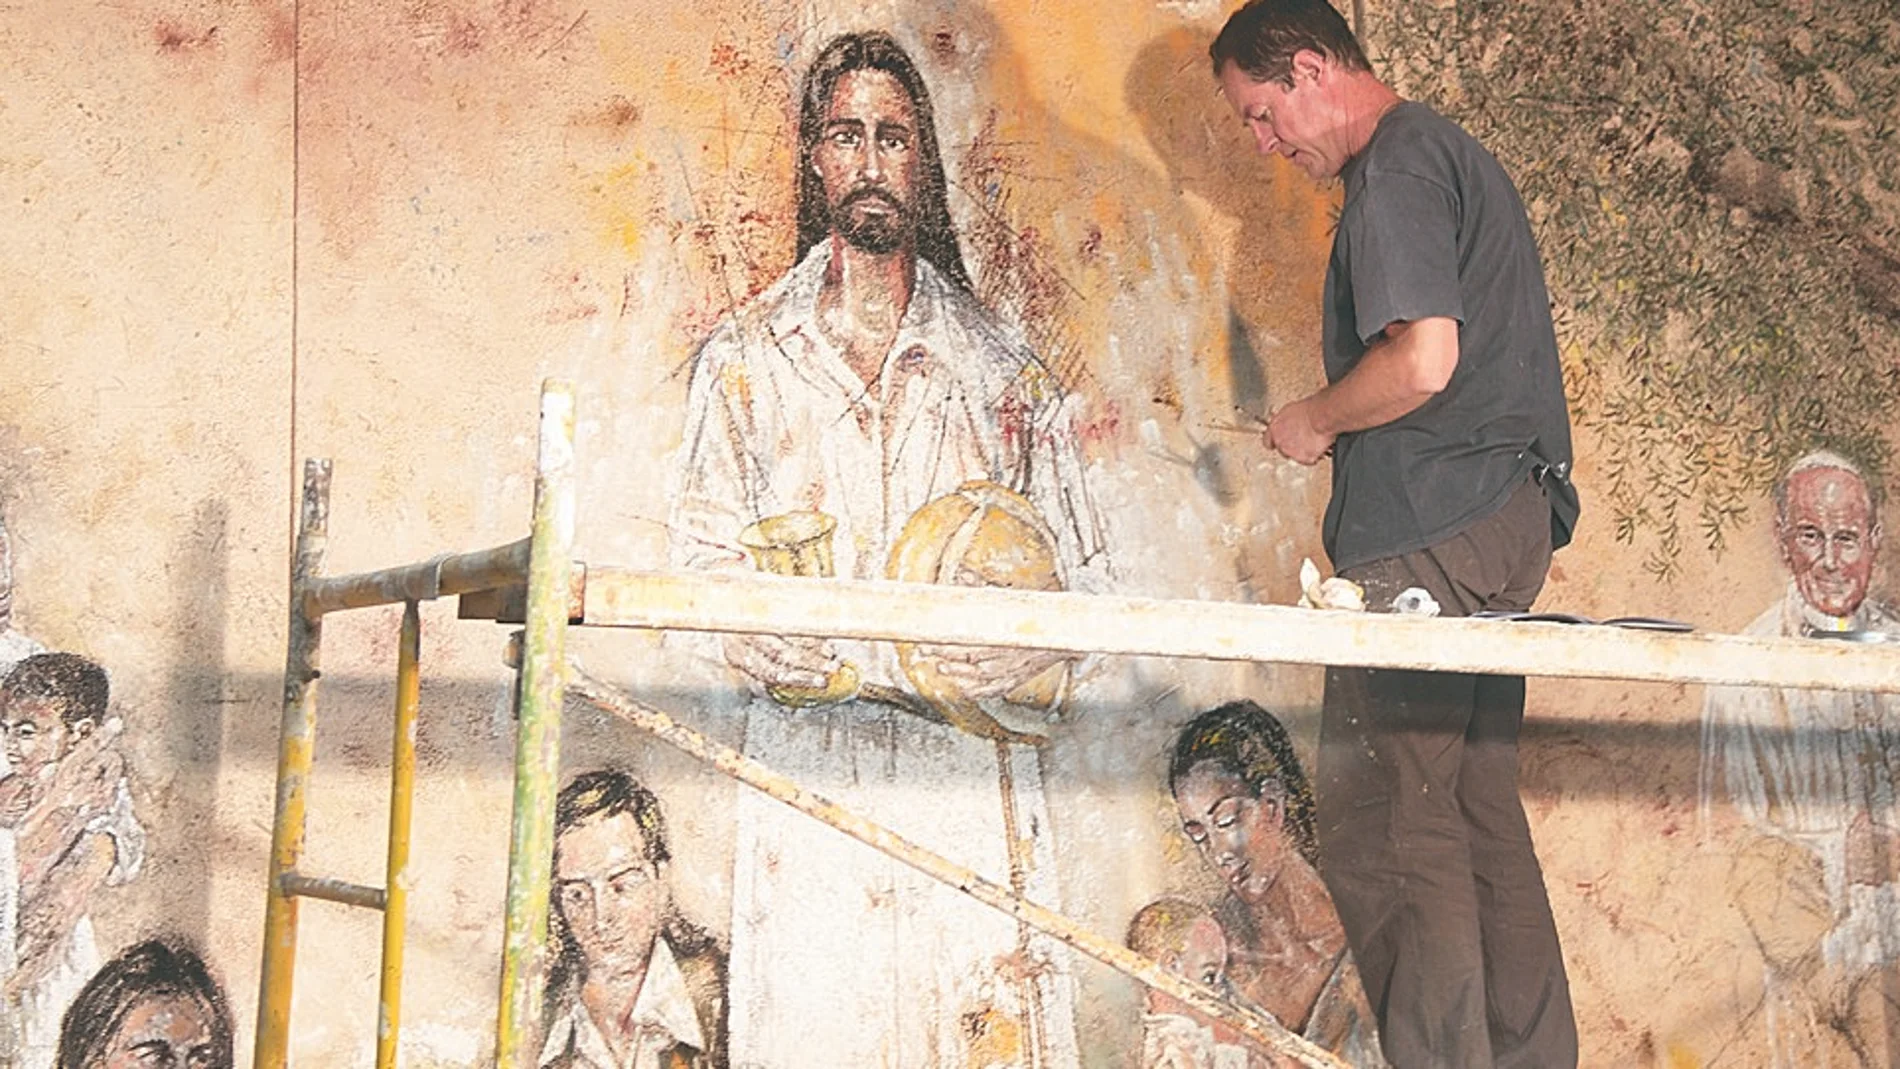 La obra de Retamar no es el clásico mural religioso. Ya ha terminado el ábside y antes de fin de año culminará otras dos paredes de la iglesia que aún están caladas